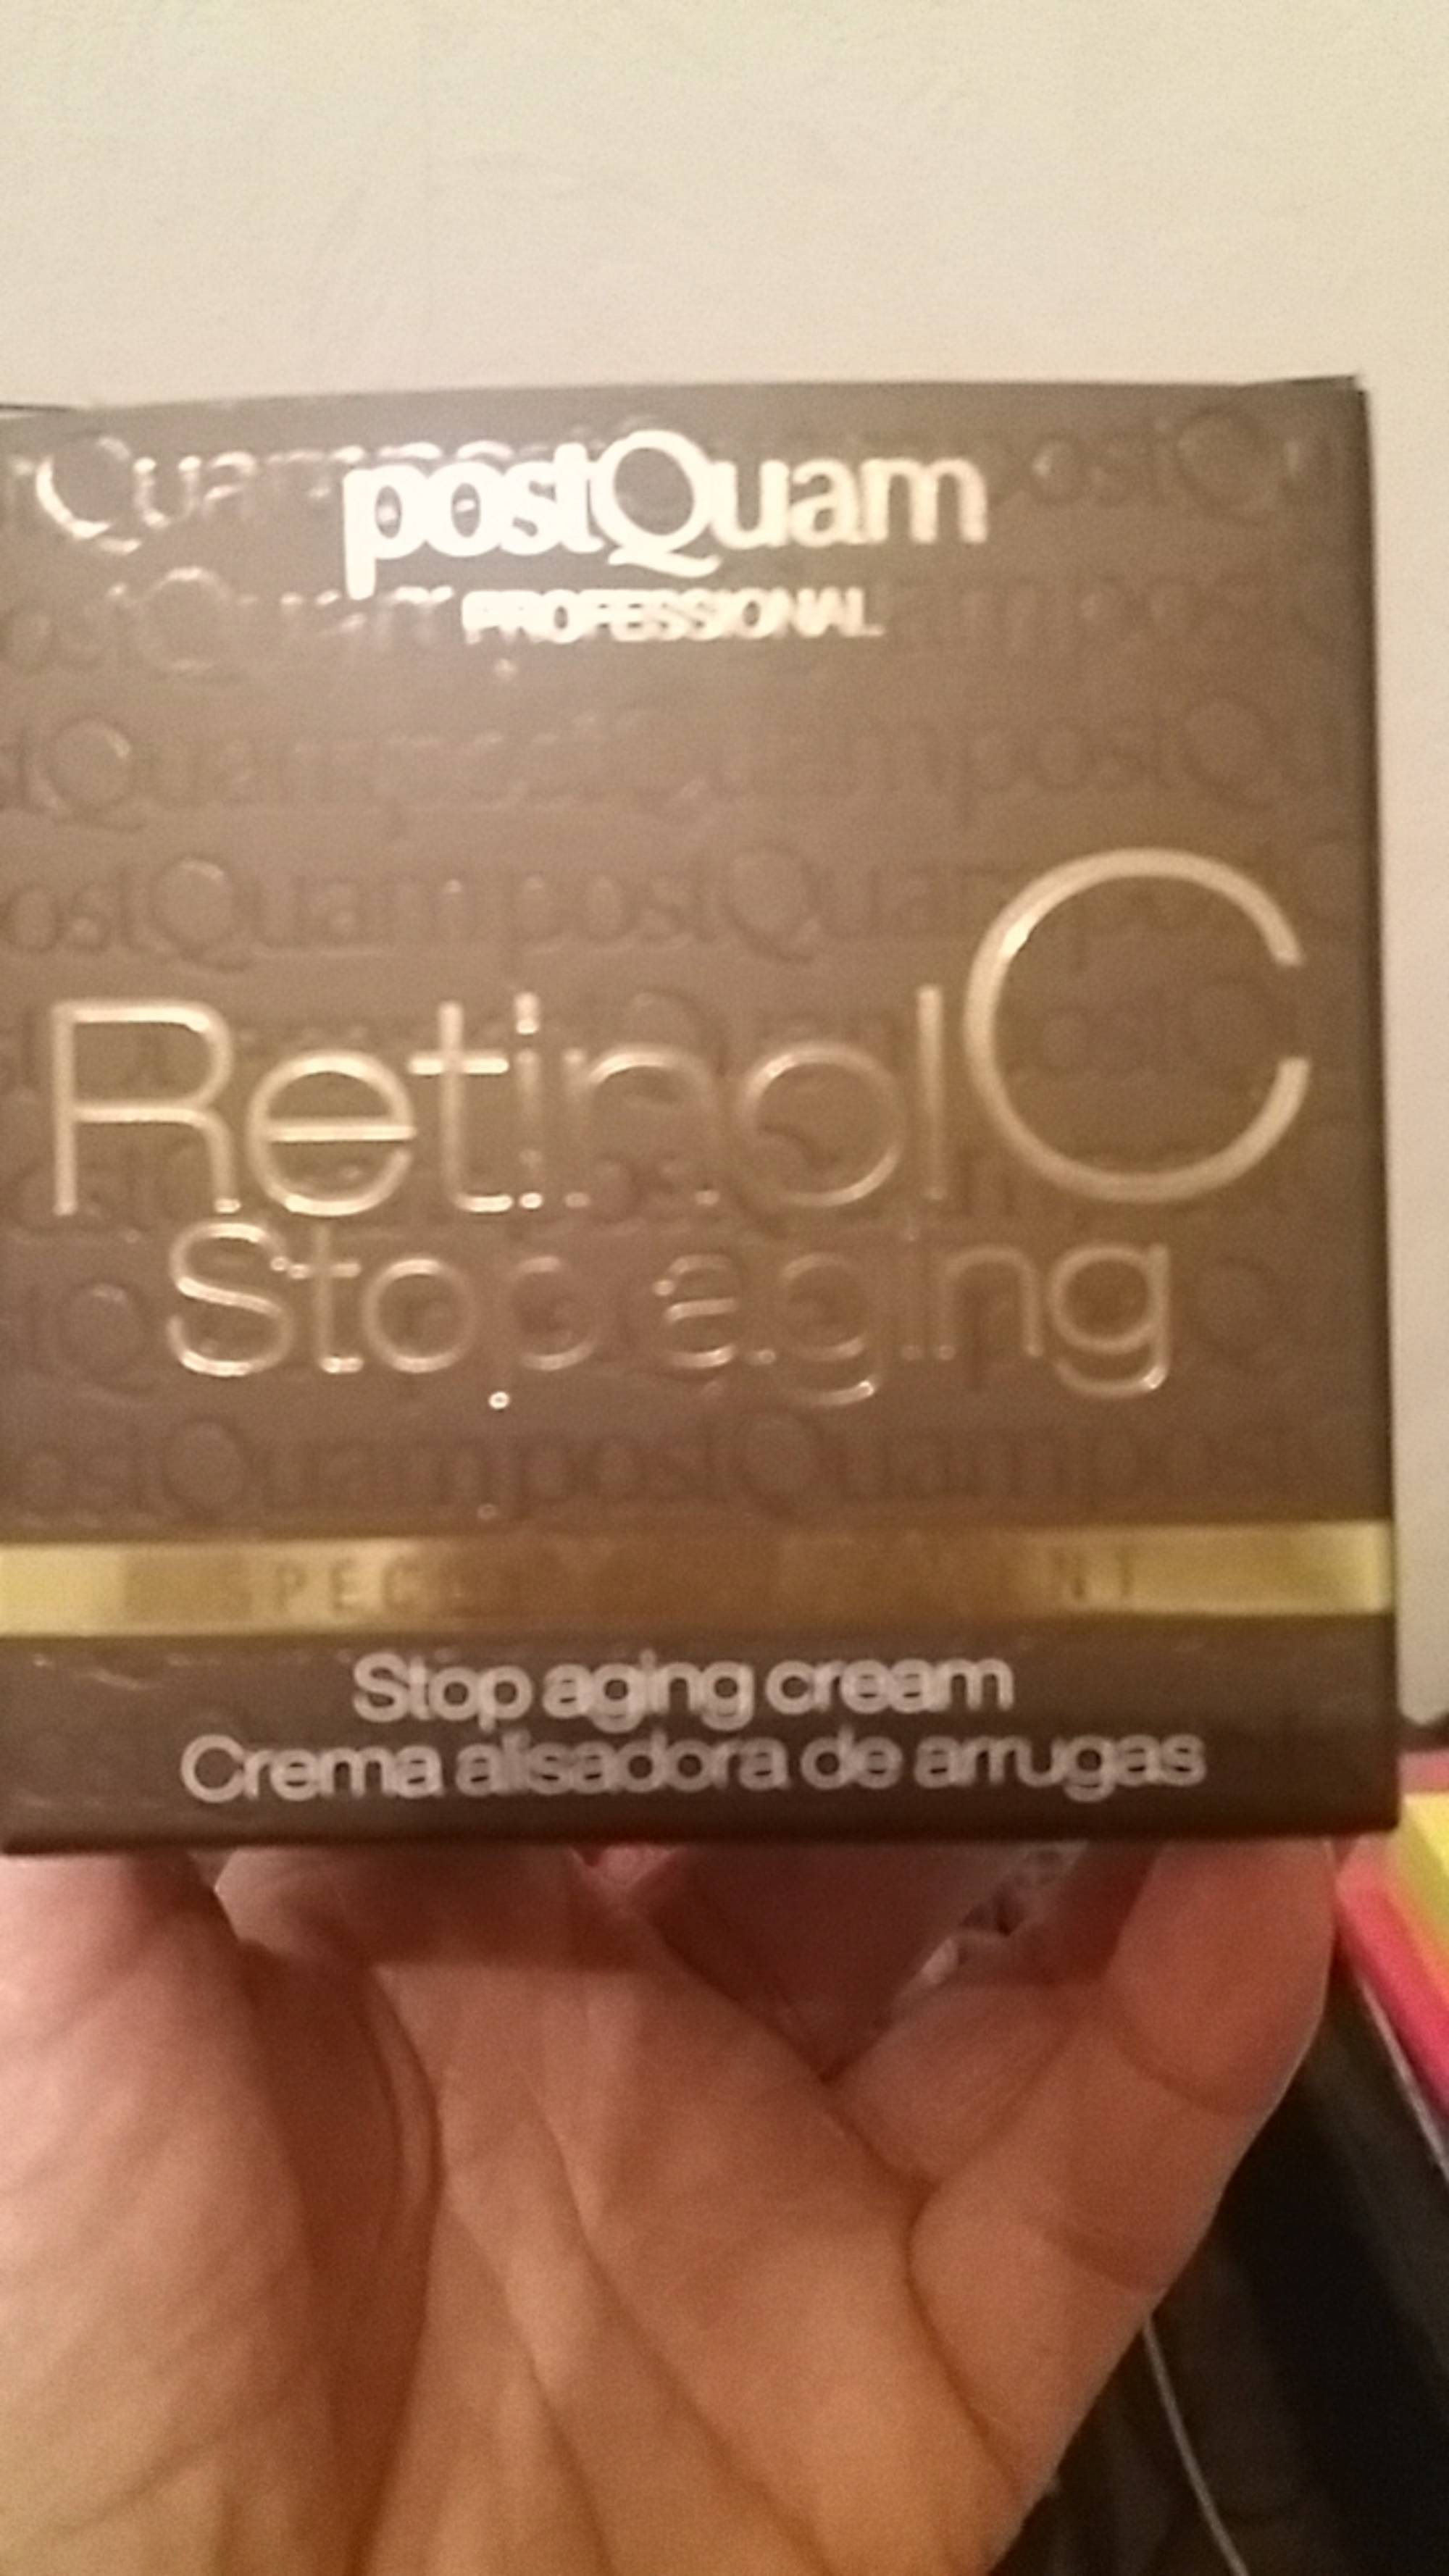 POSTQUAM - Retinol C stop aging